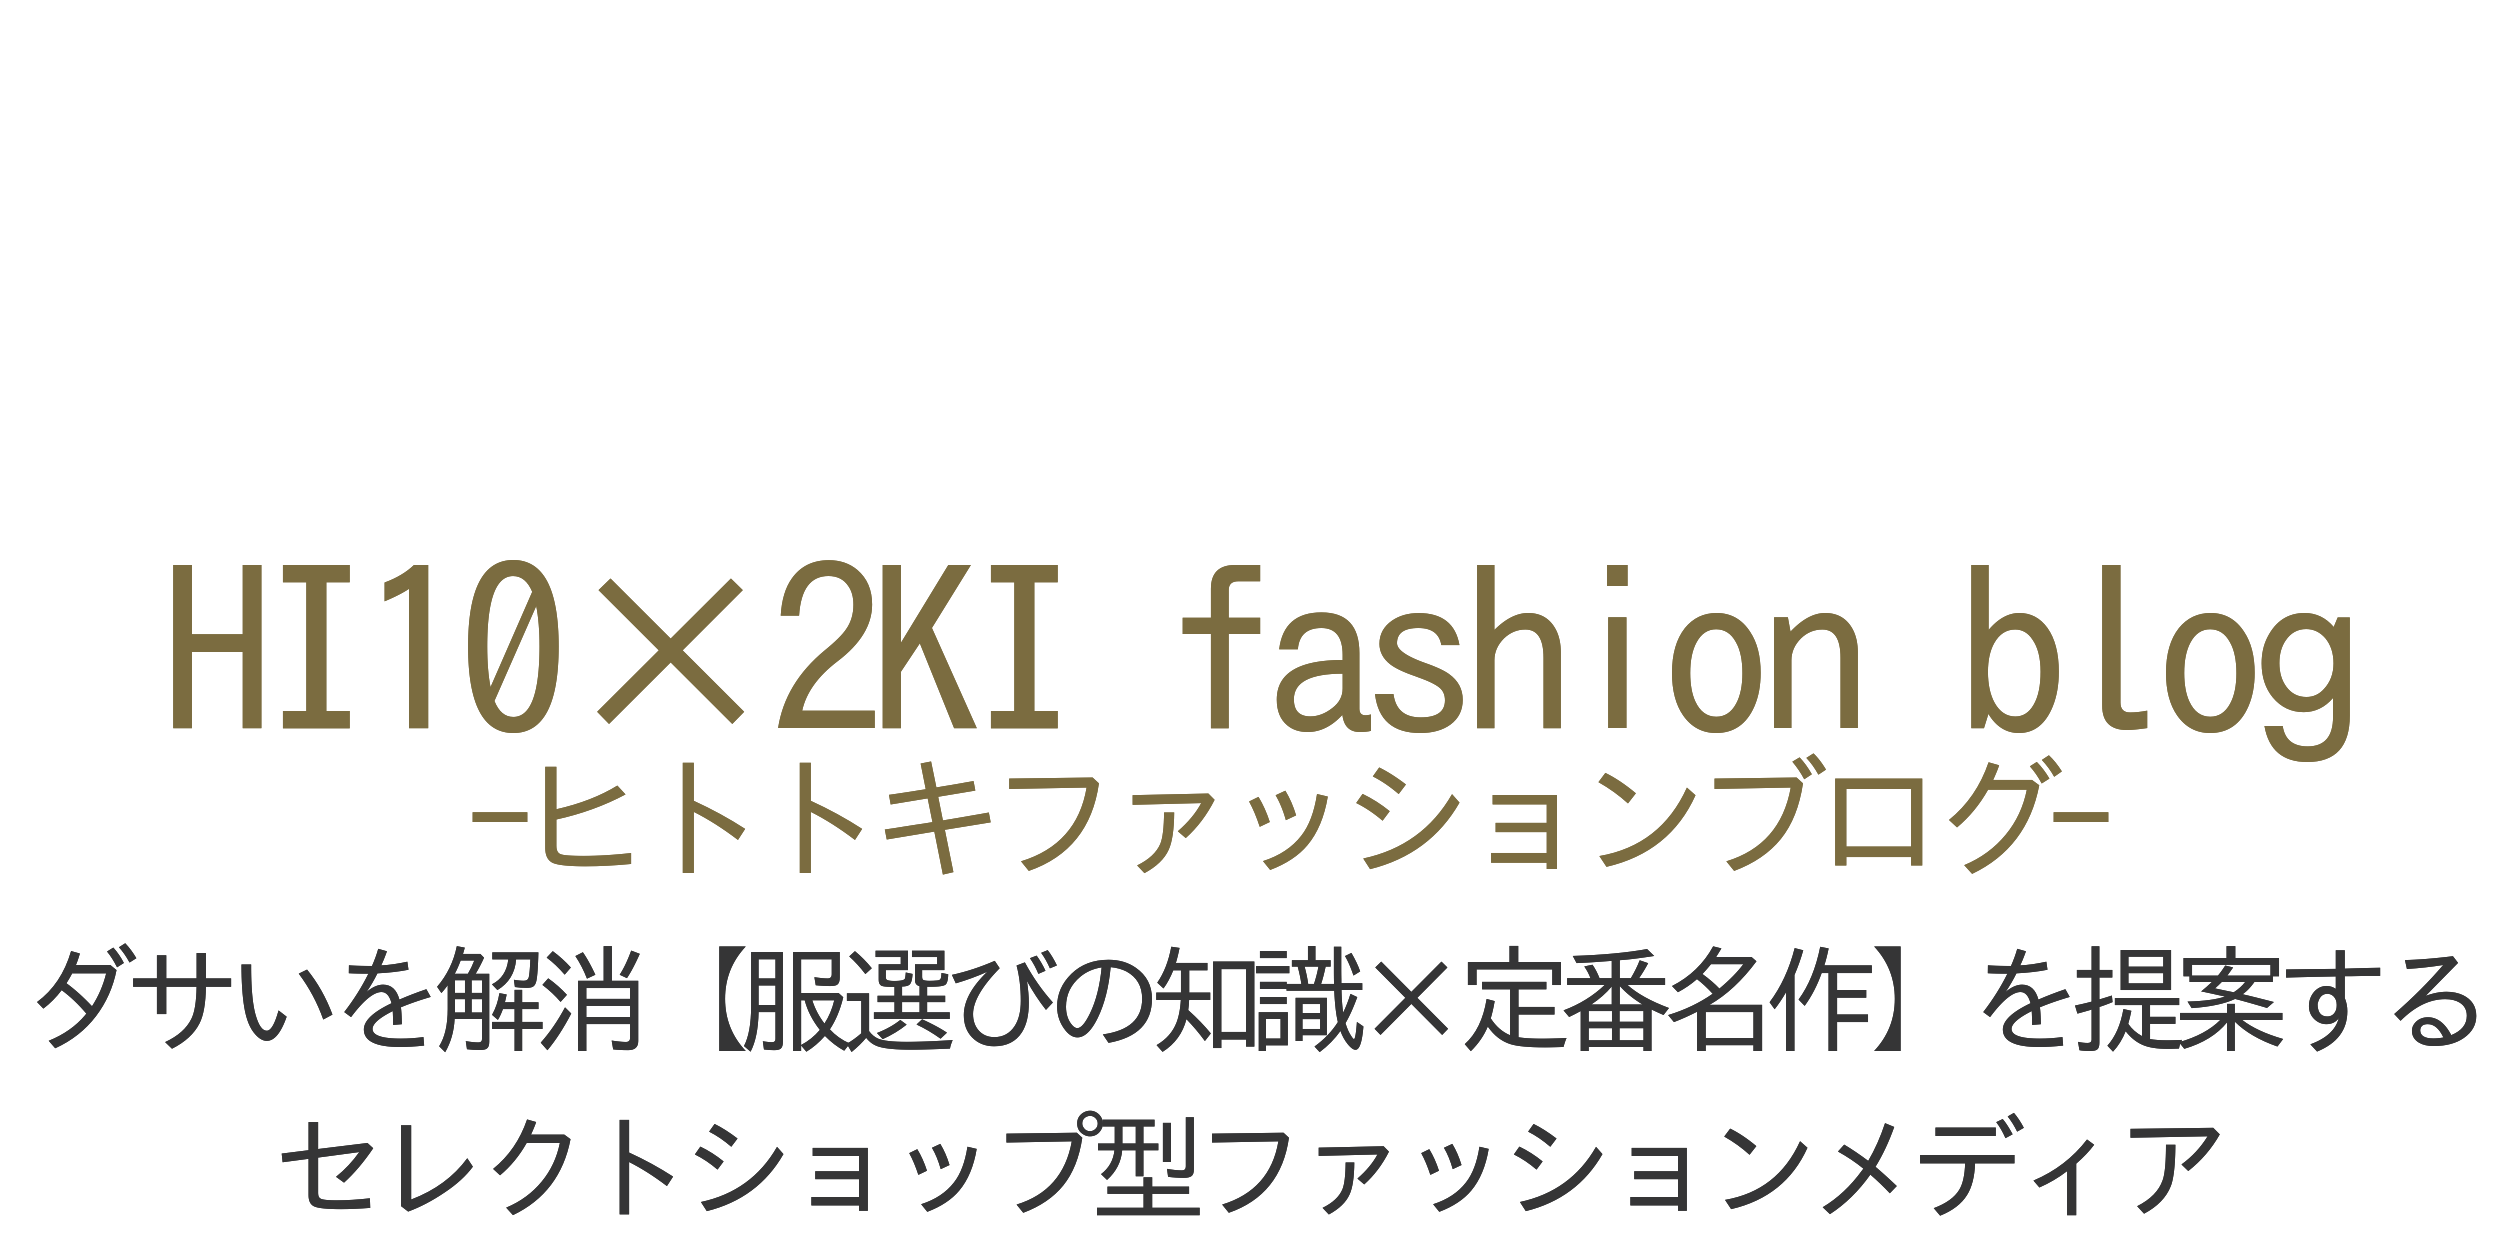 HI10×2KI fashion blog-ヒトトキファッションブログ-